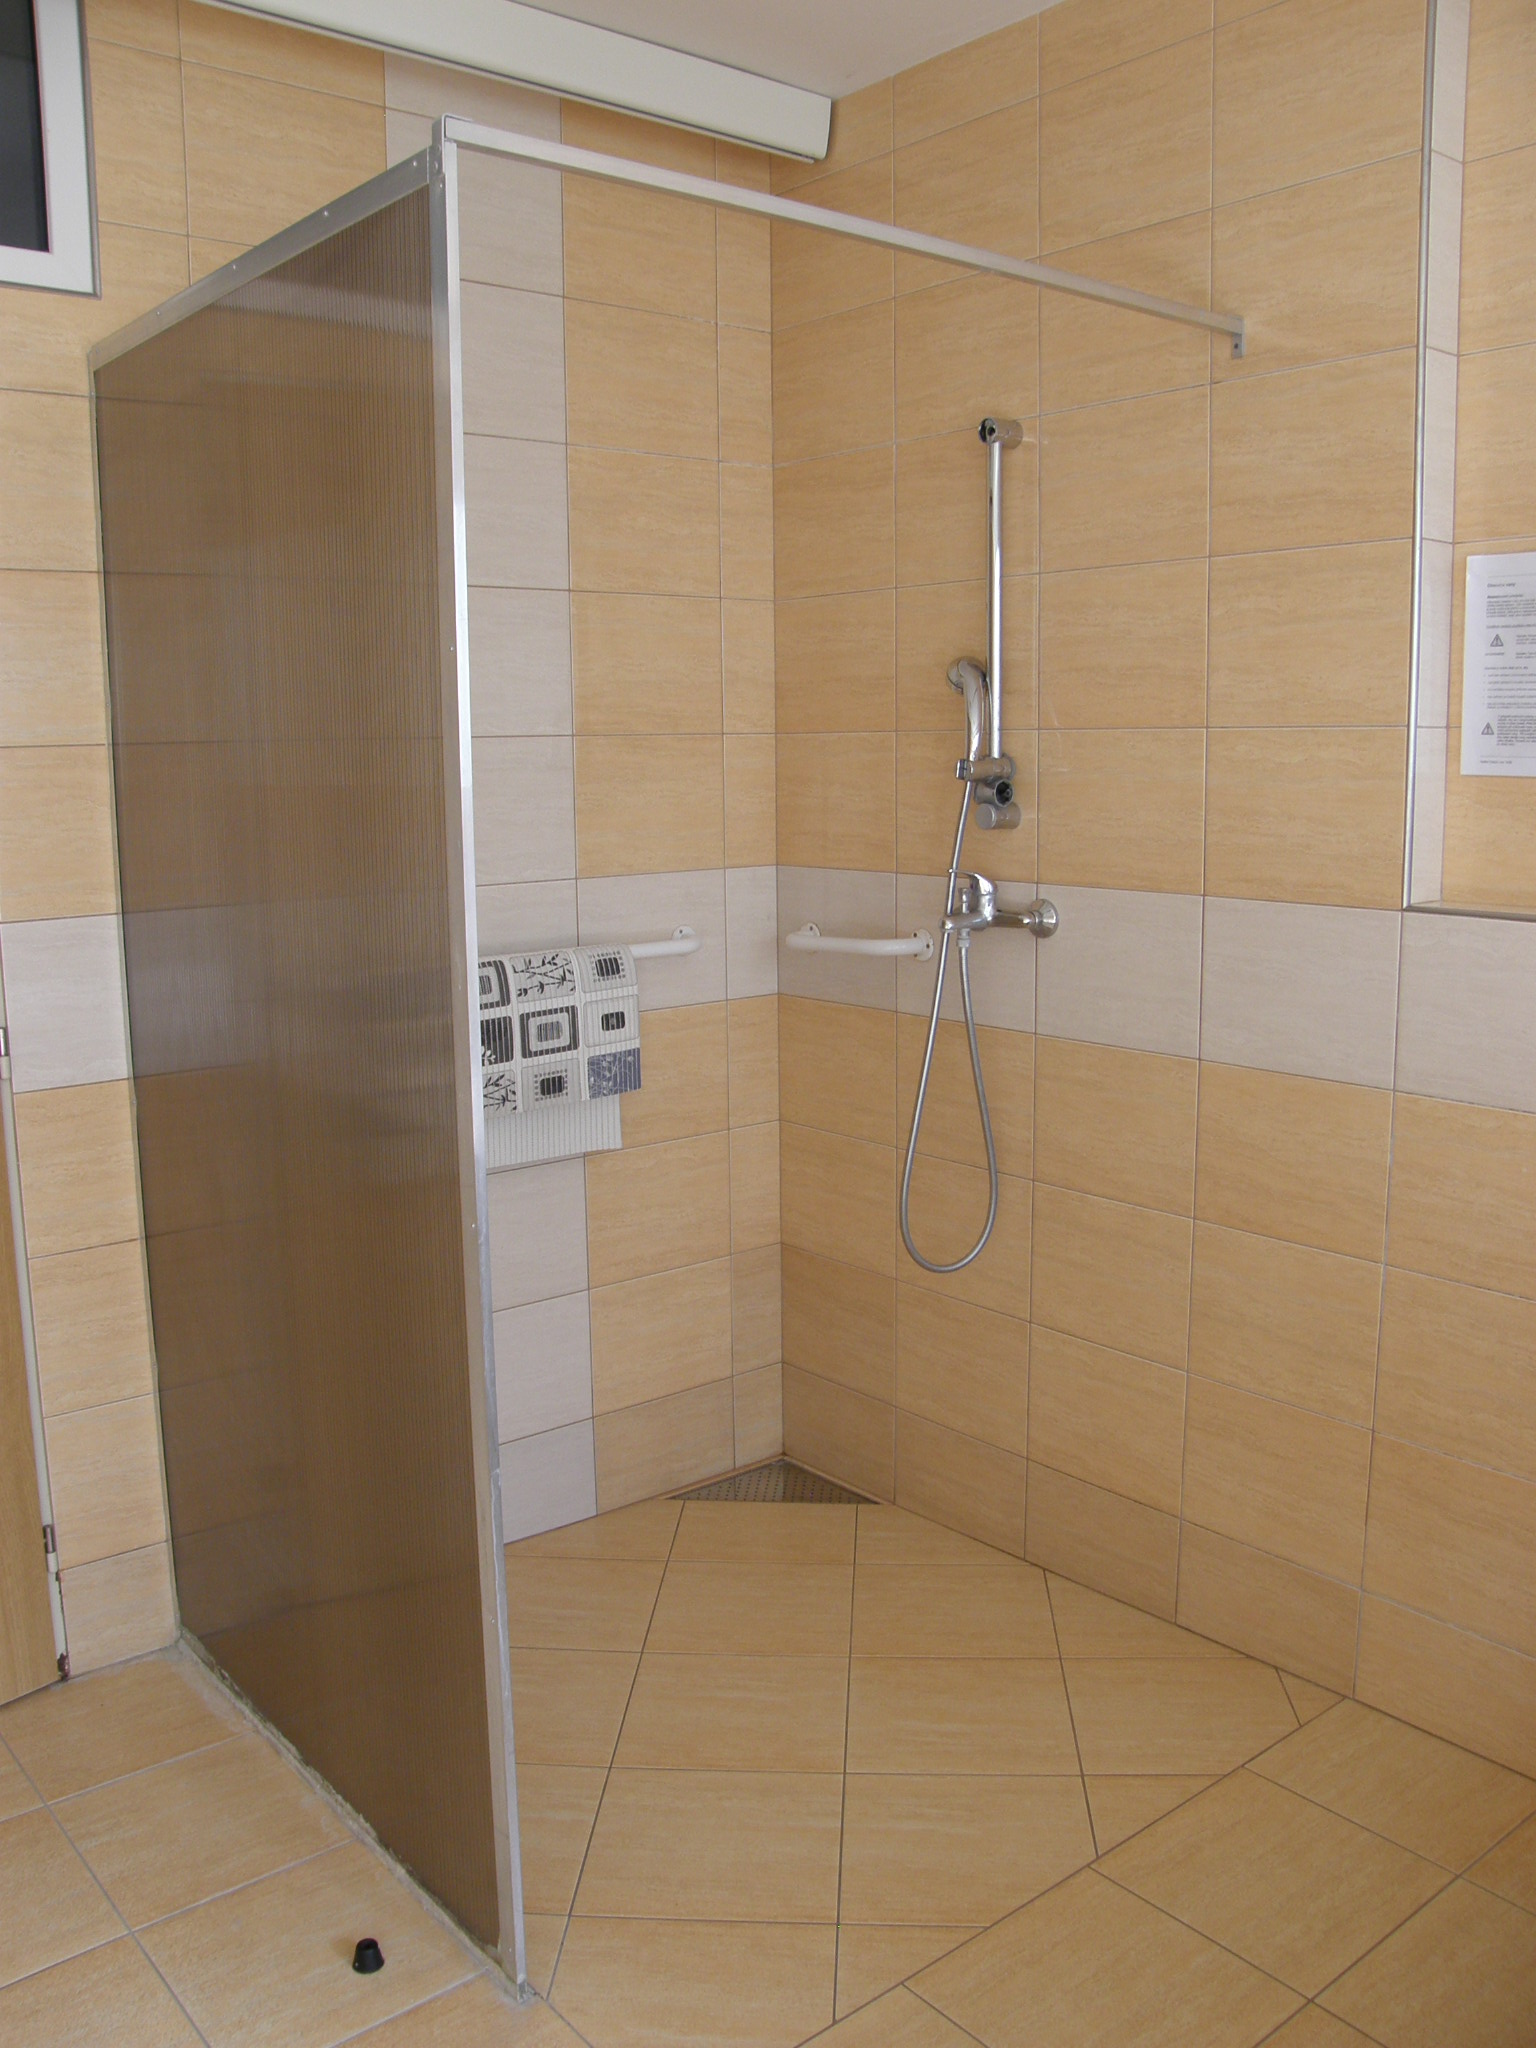 Sprchový kout ve středisku osobní hygieny.